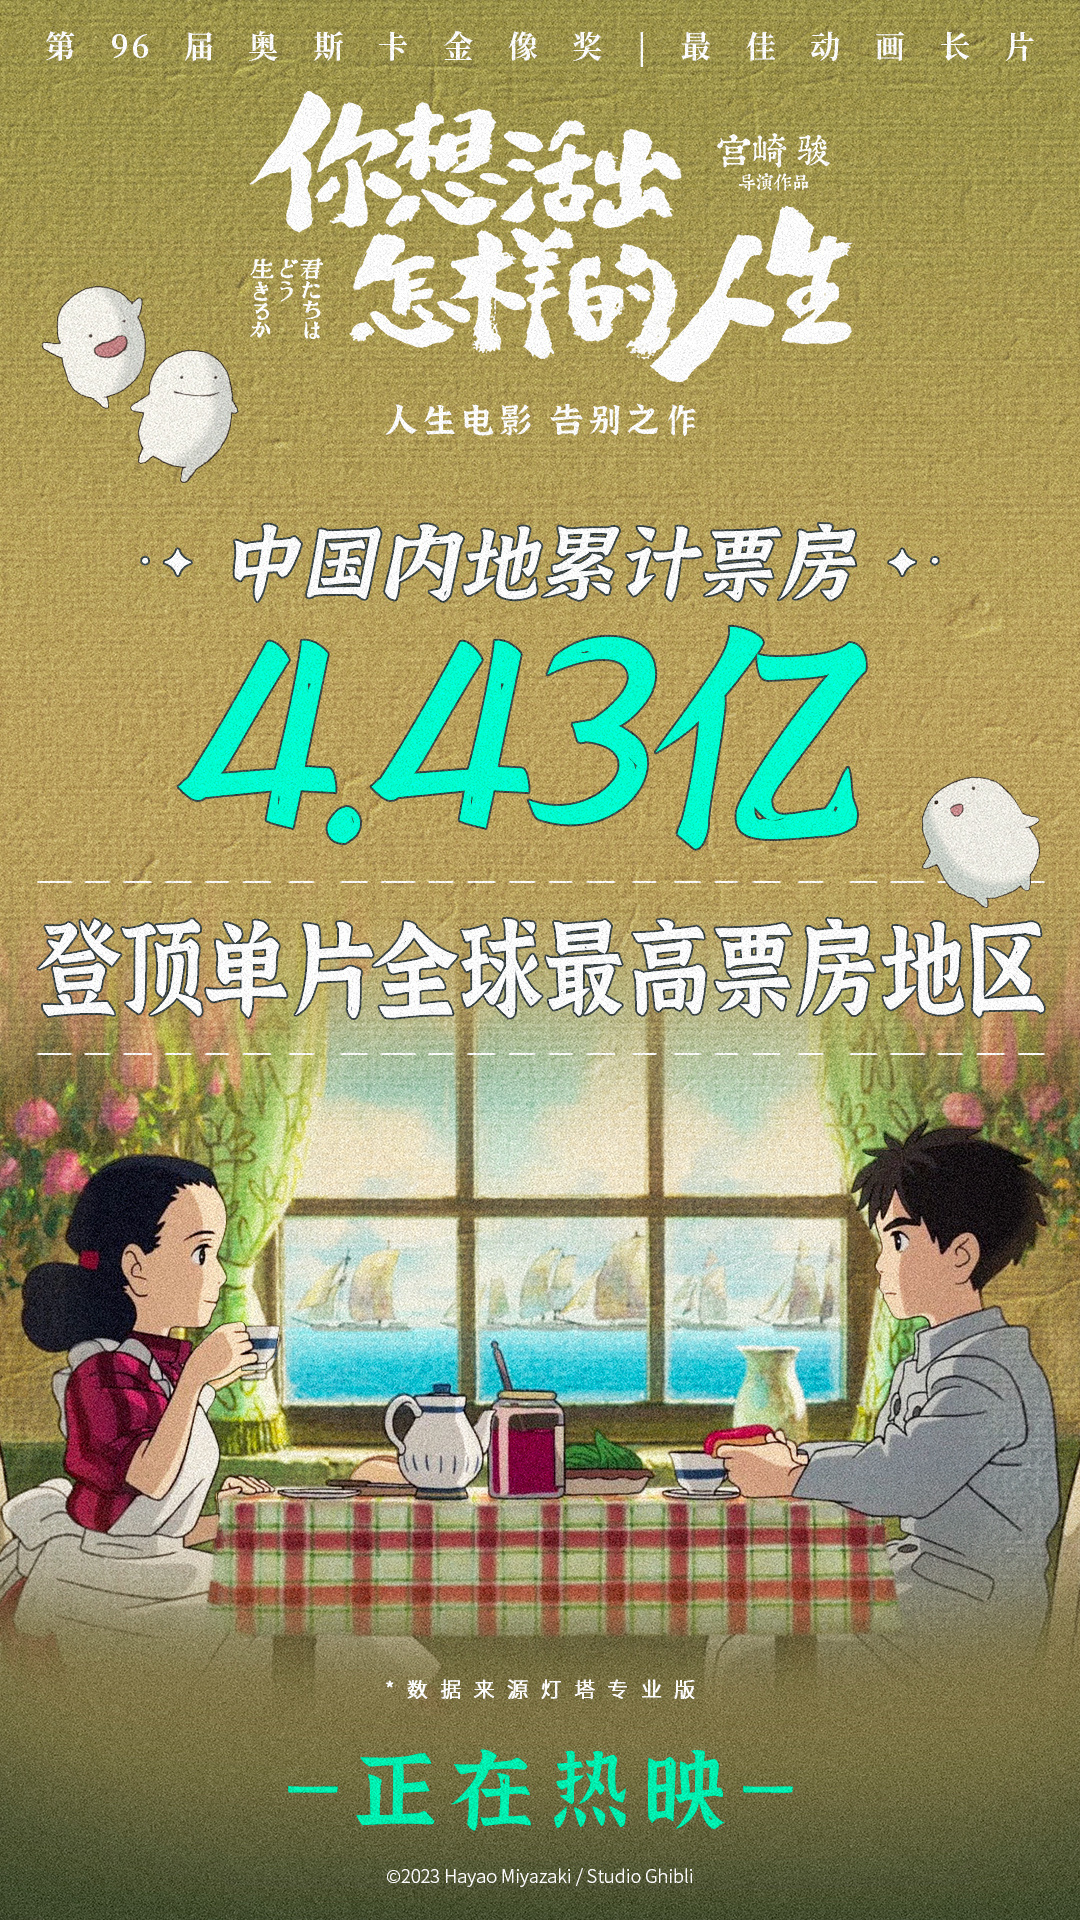 截至发稿，影片在中国内地累计票房突破4.4亿